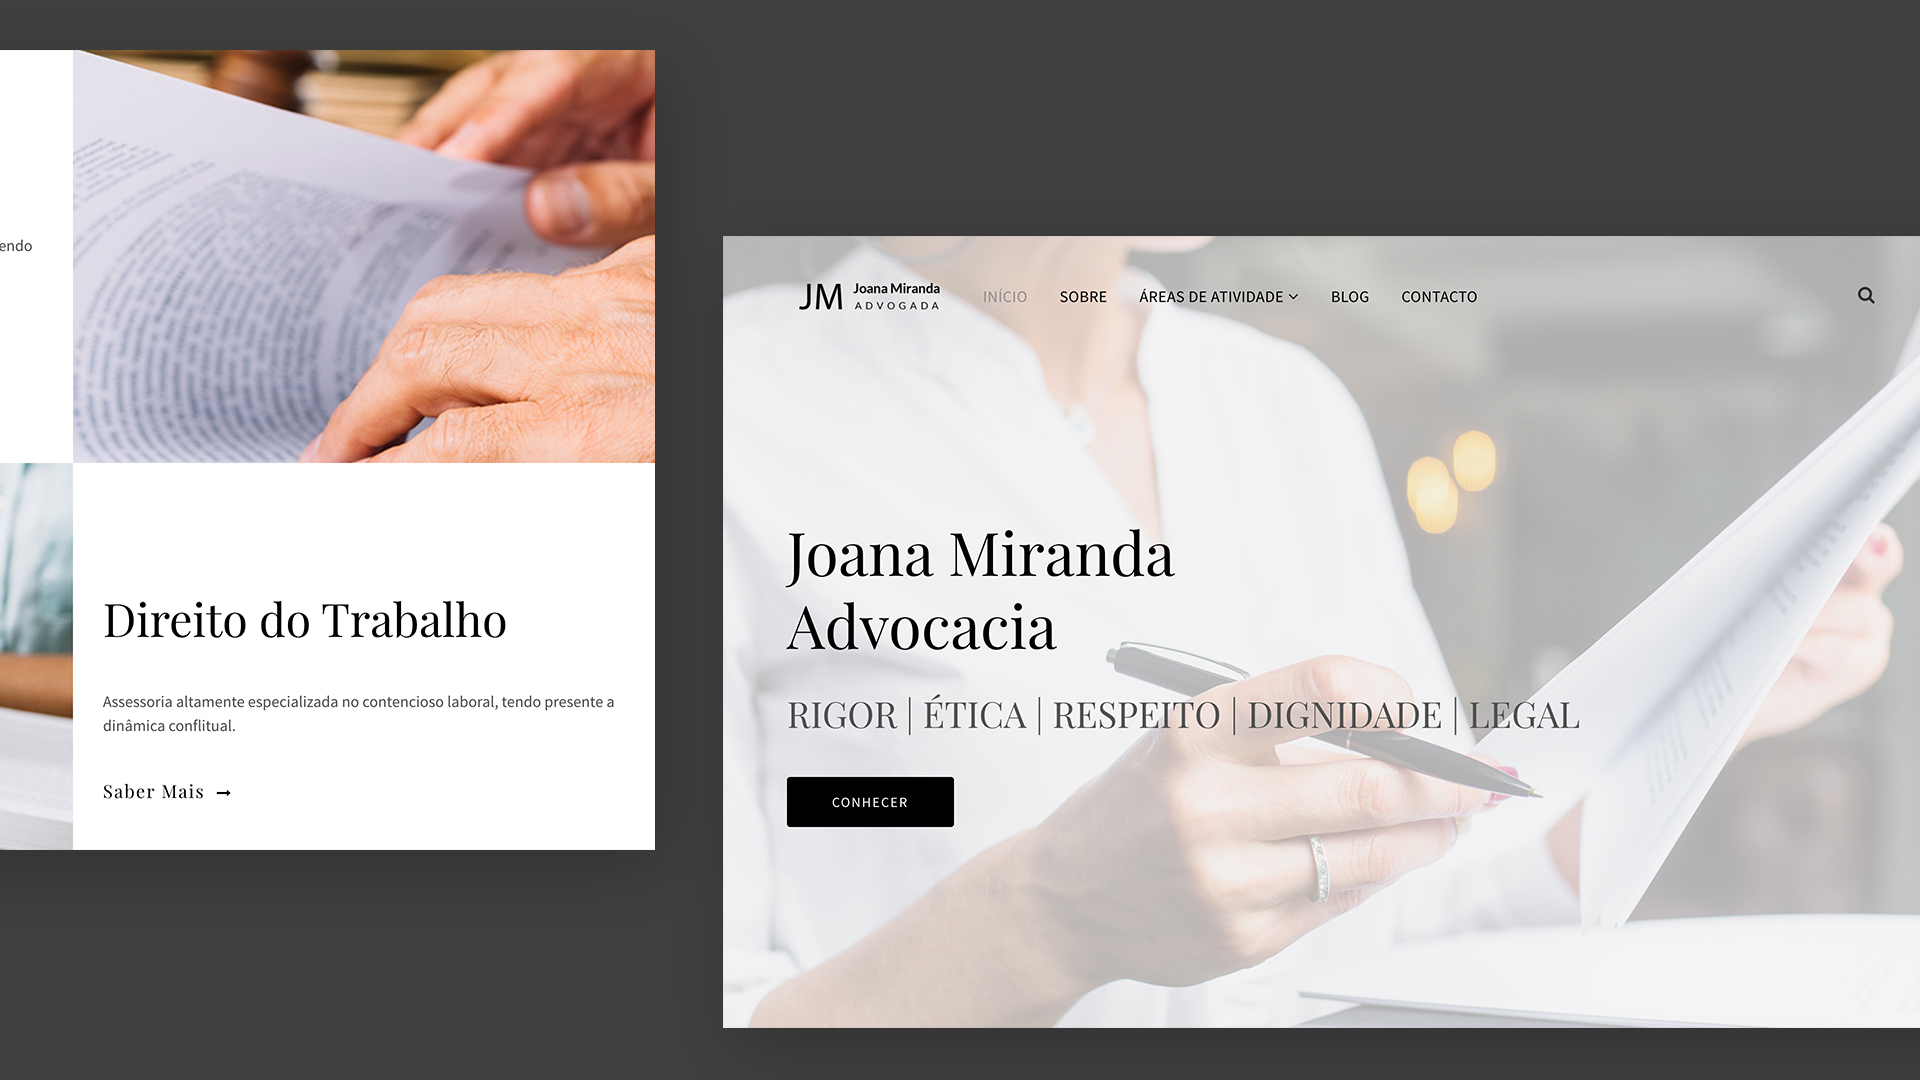 Joana Miranda já está online!